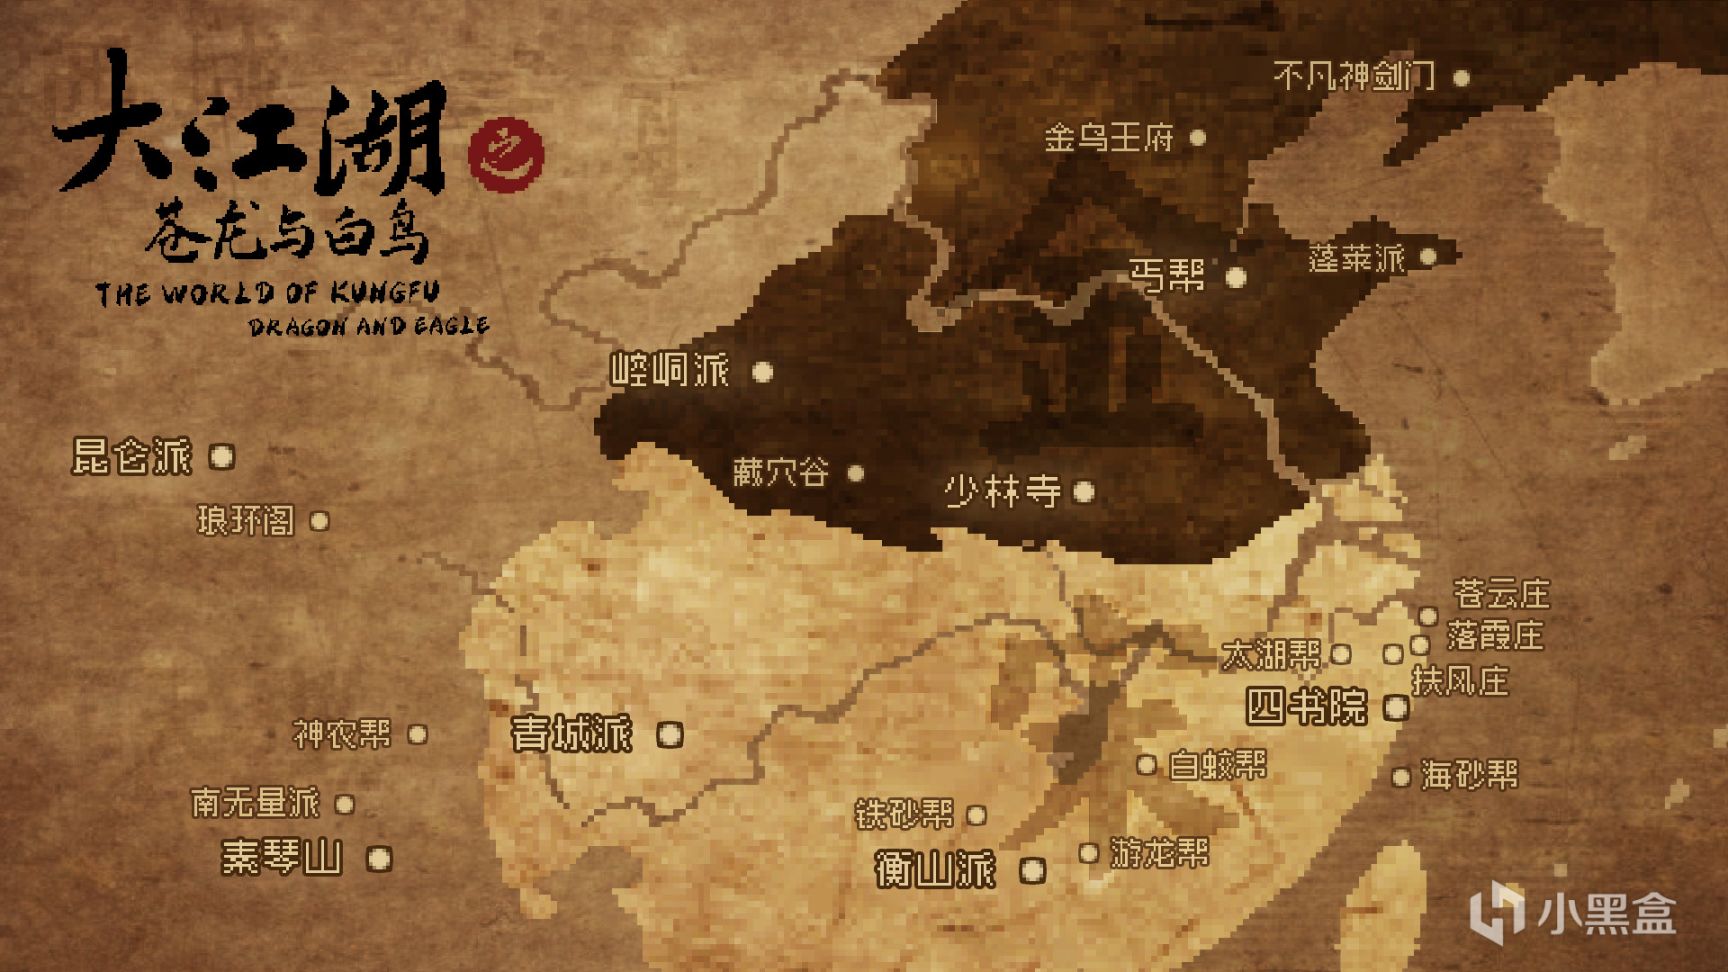 《大江湖之苍龙与白鸟》发行商由哔哩哔哩游戏变更为凉屋游戏-第8张